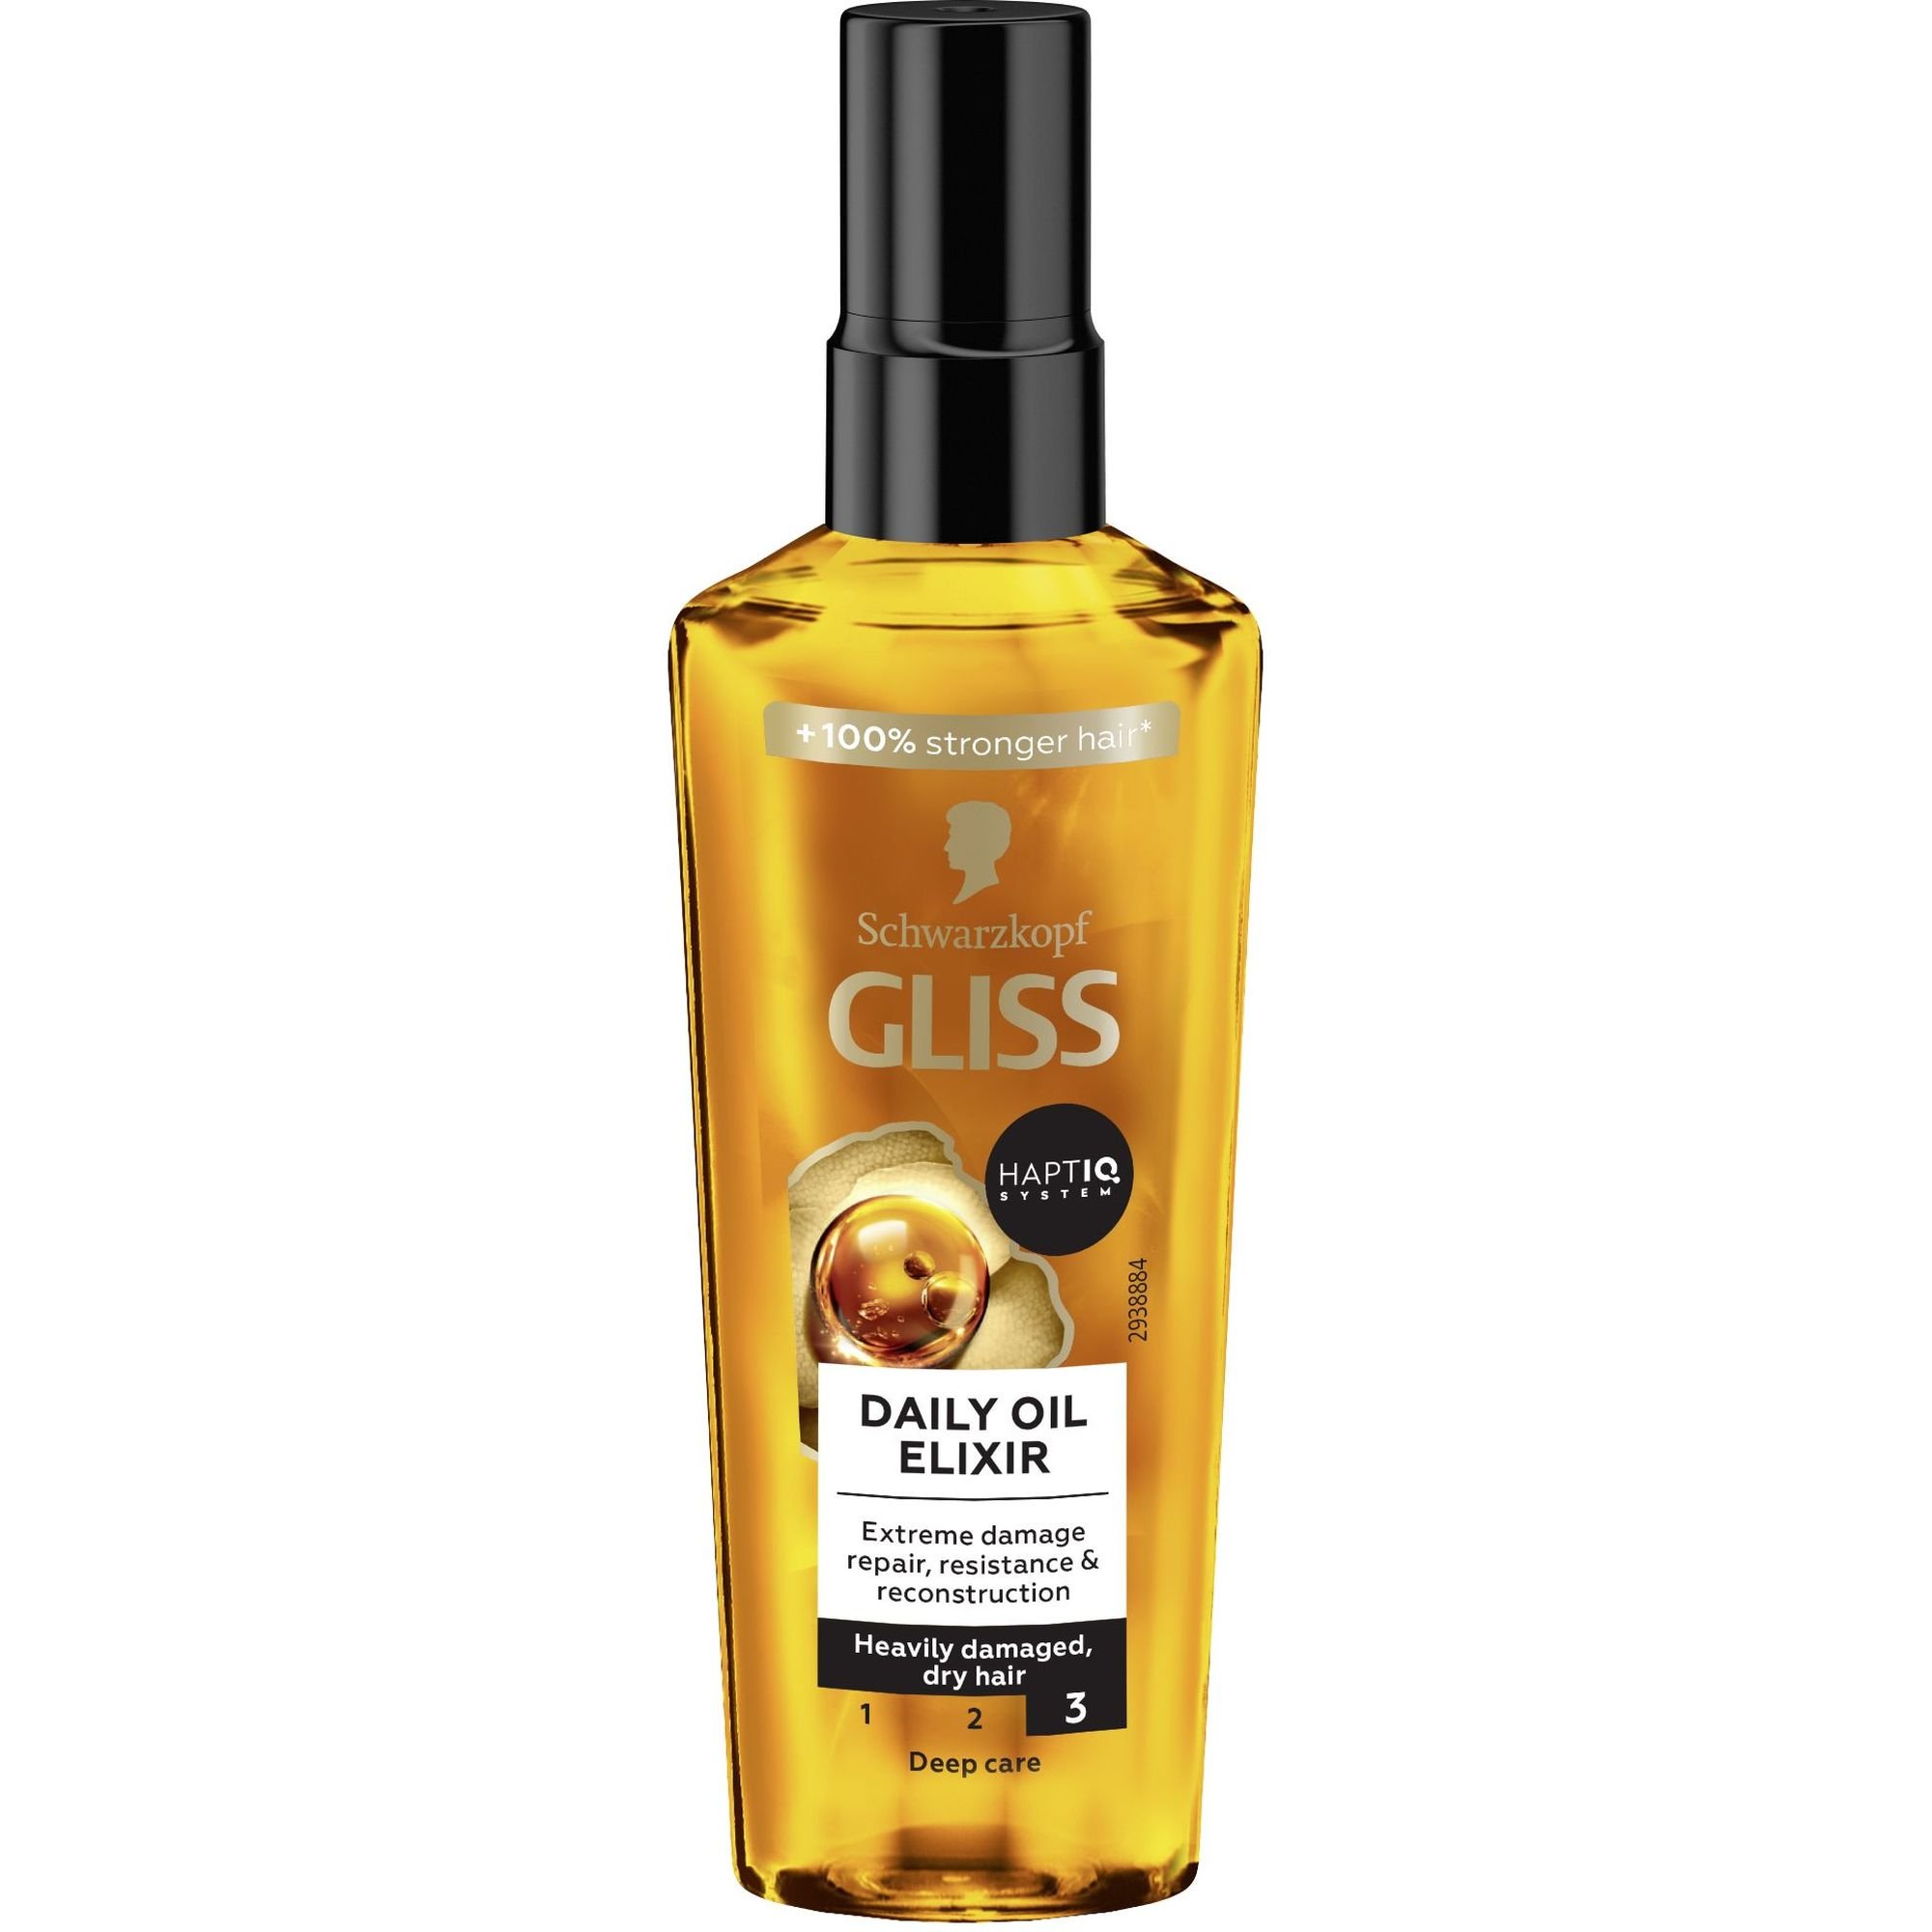 Масло для волос Gliss Daily Oil Elixir для секущихся волос 75 мл - фото 1